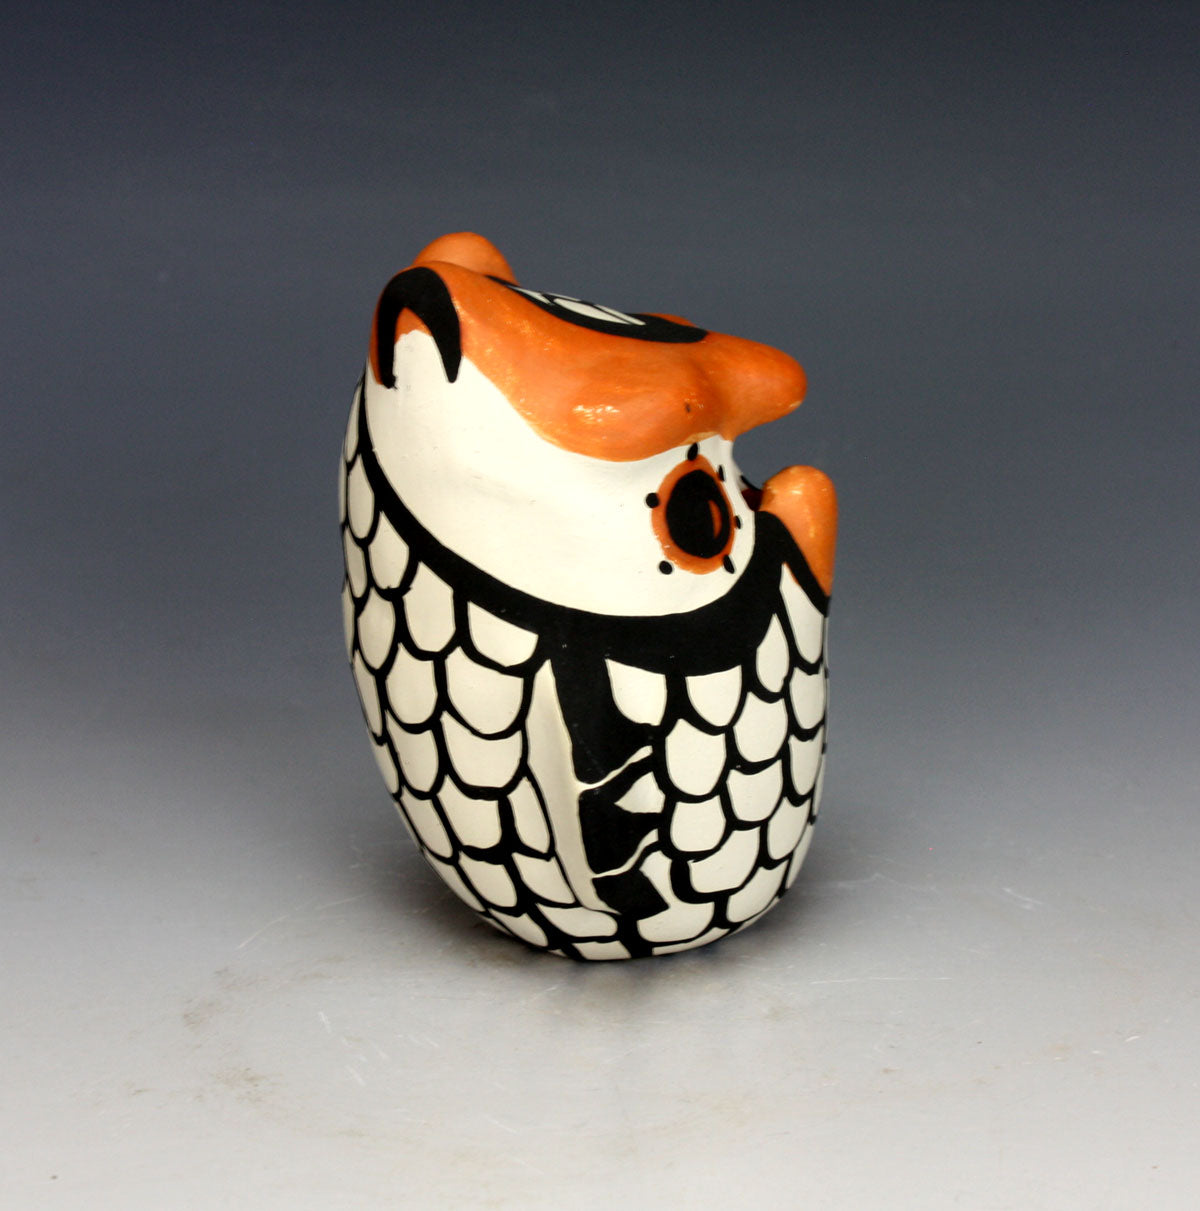 Acoma Pueblo Native American Indian Pottery Small Owl #3 - Mary Antonio Garcia